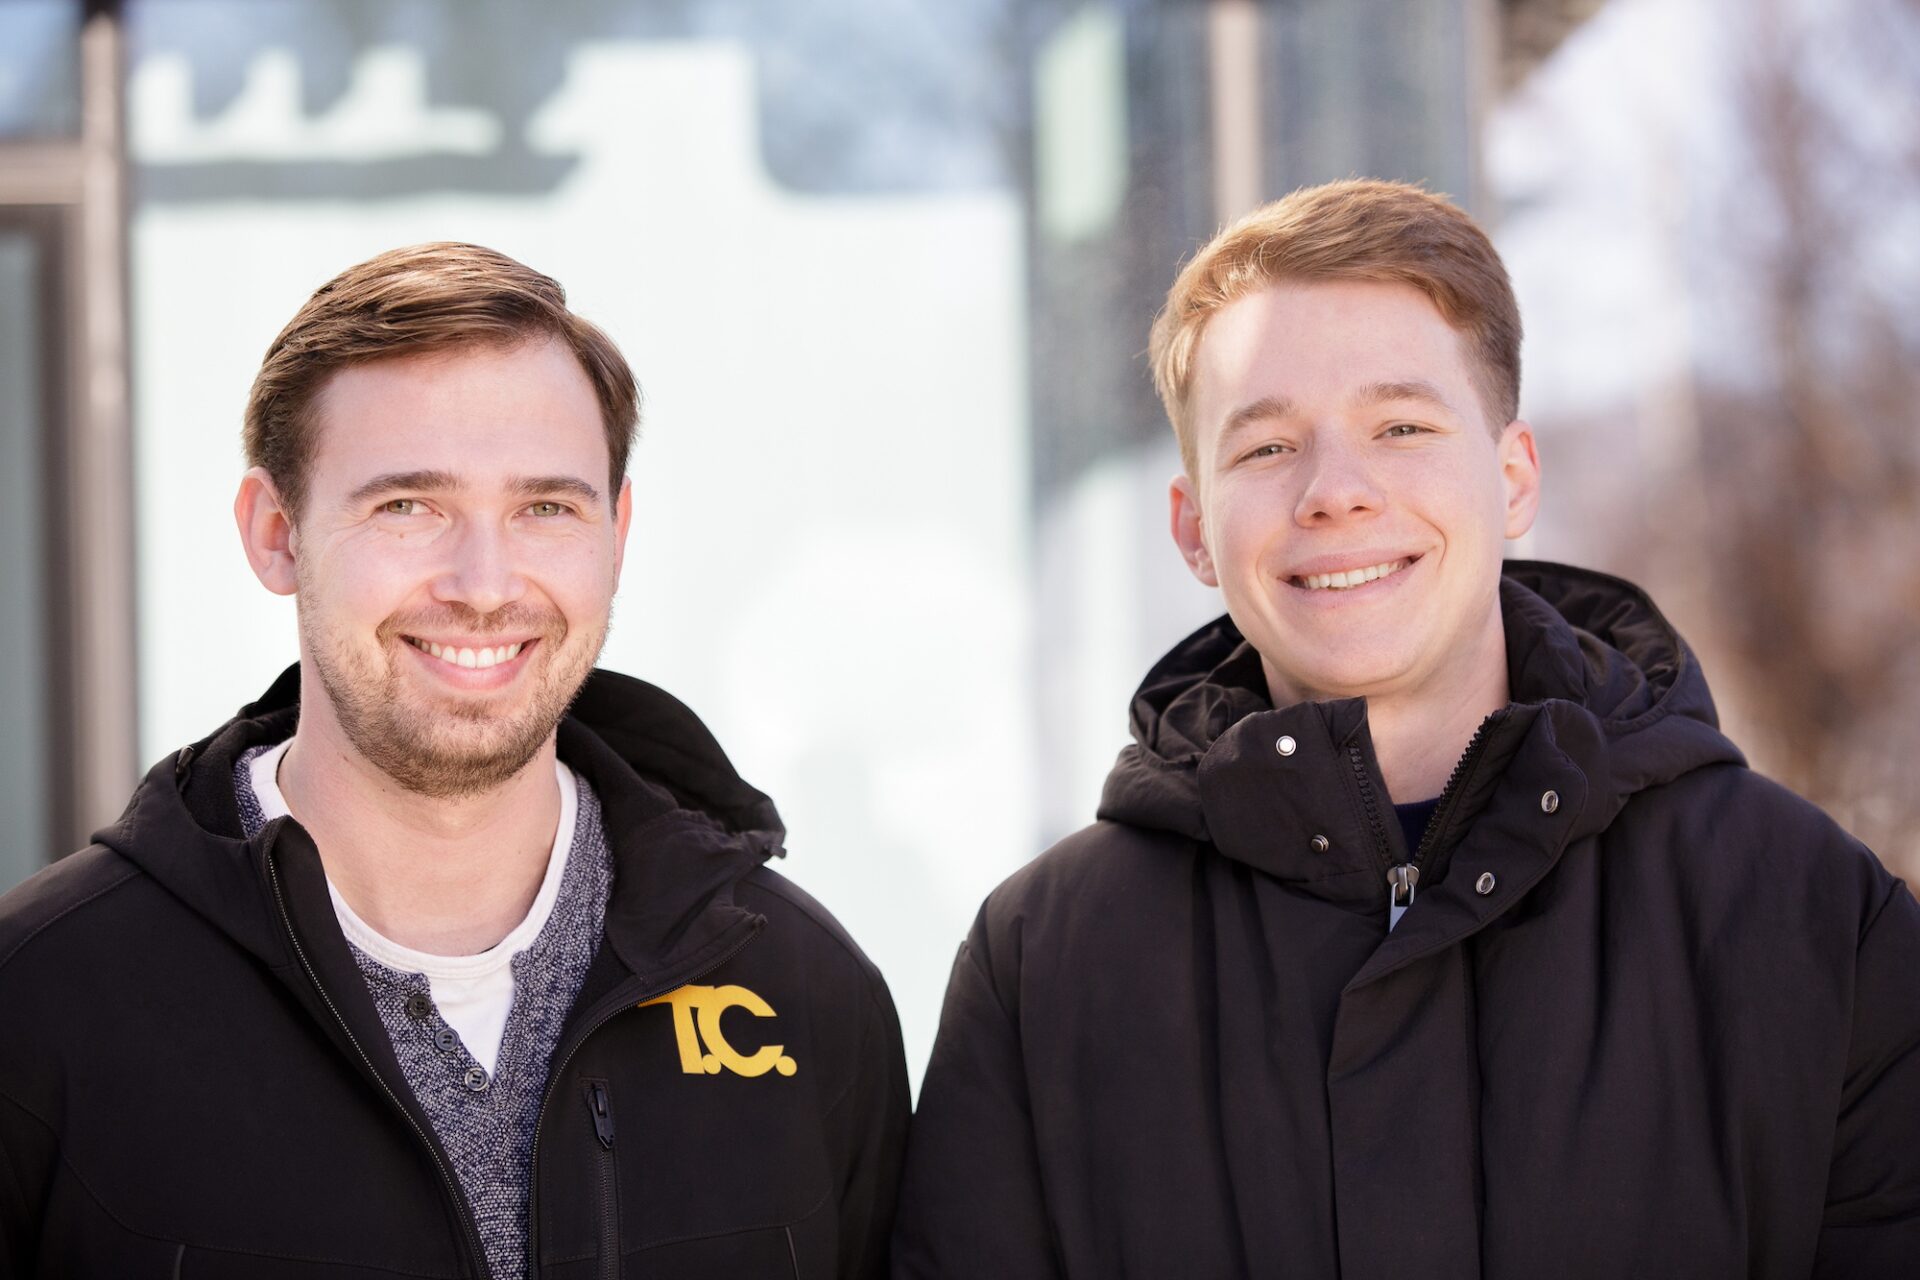 Johannes Taschwer und Bernhard Schnögl sind zwei junge Unternehmer aus Klagenfurt.